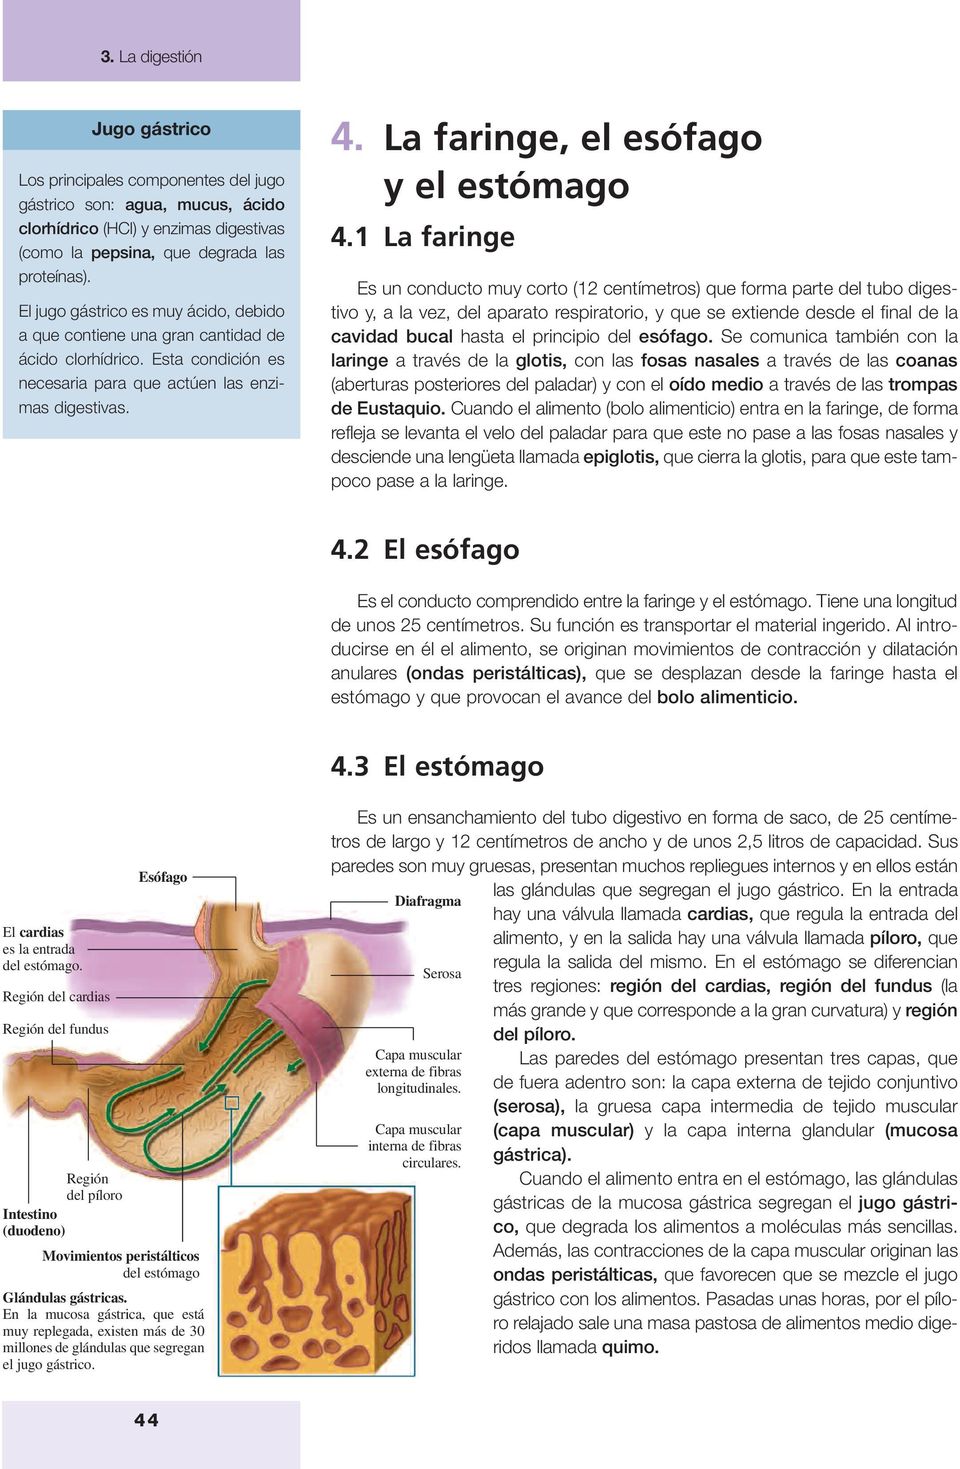 La faringe, el esófago y el estómago 4.